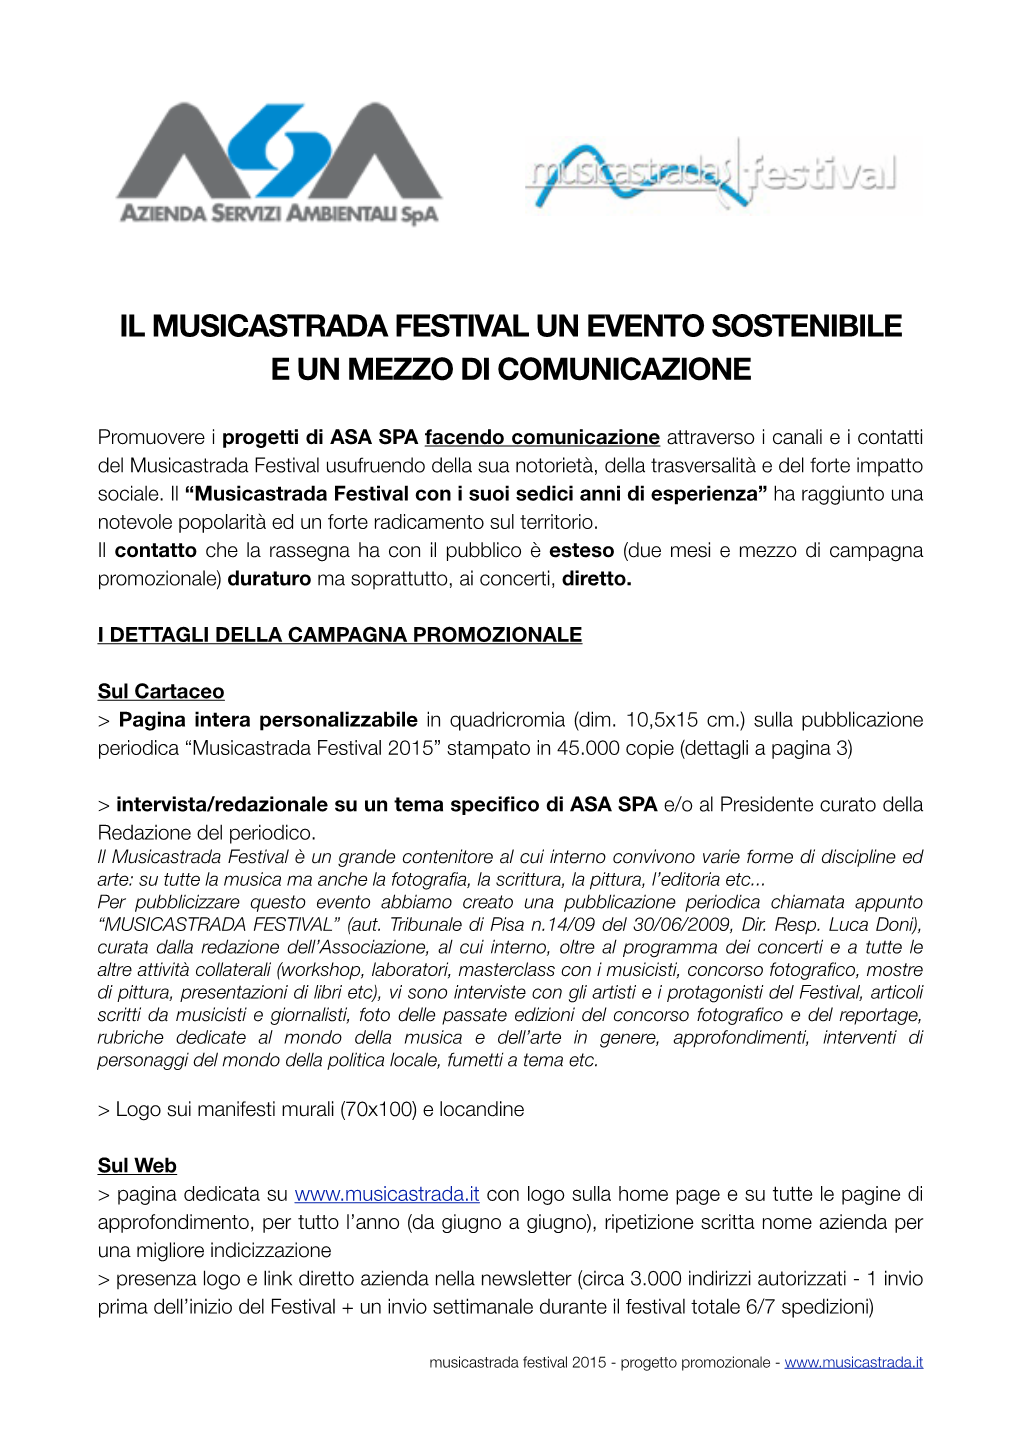 Musicastrada Festival